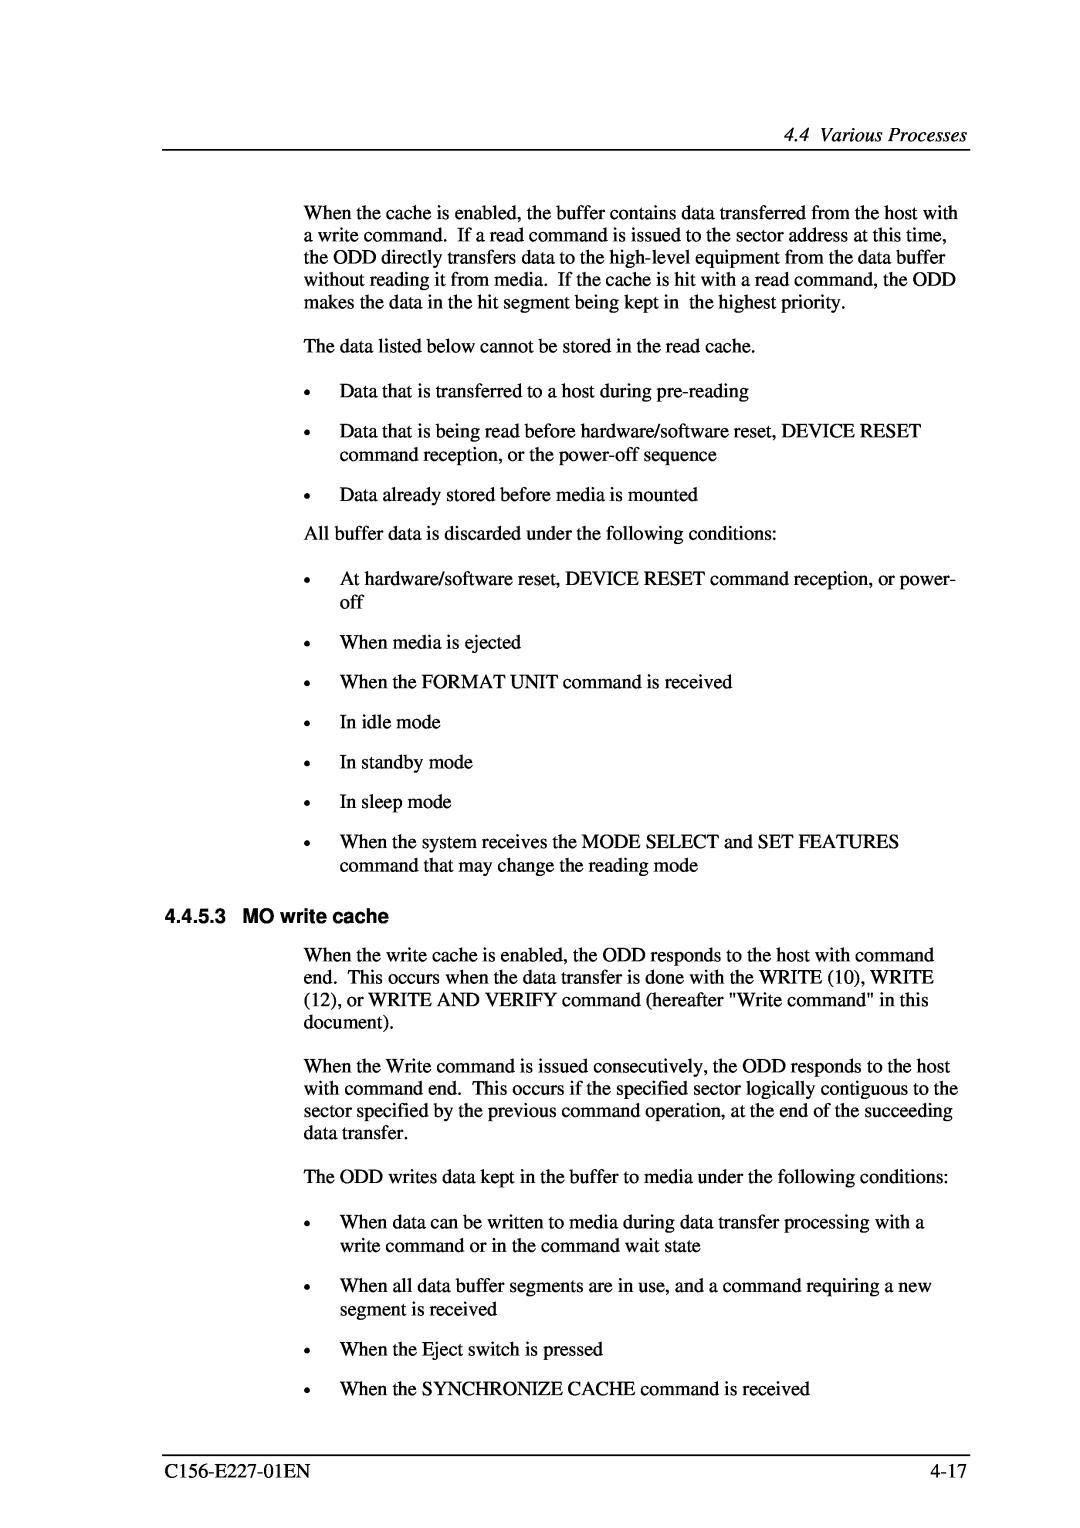 Fujitsu MCM3130AP, MCM3064AP manual MO write cache, Various Processes 